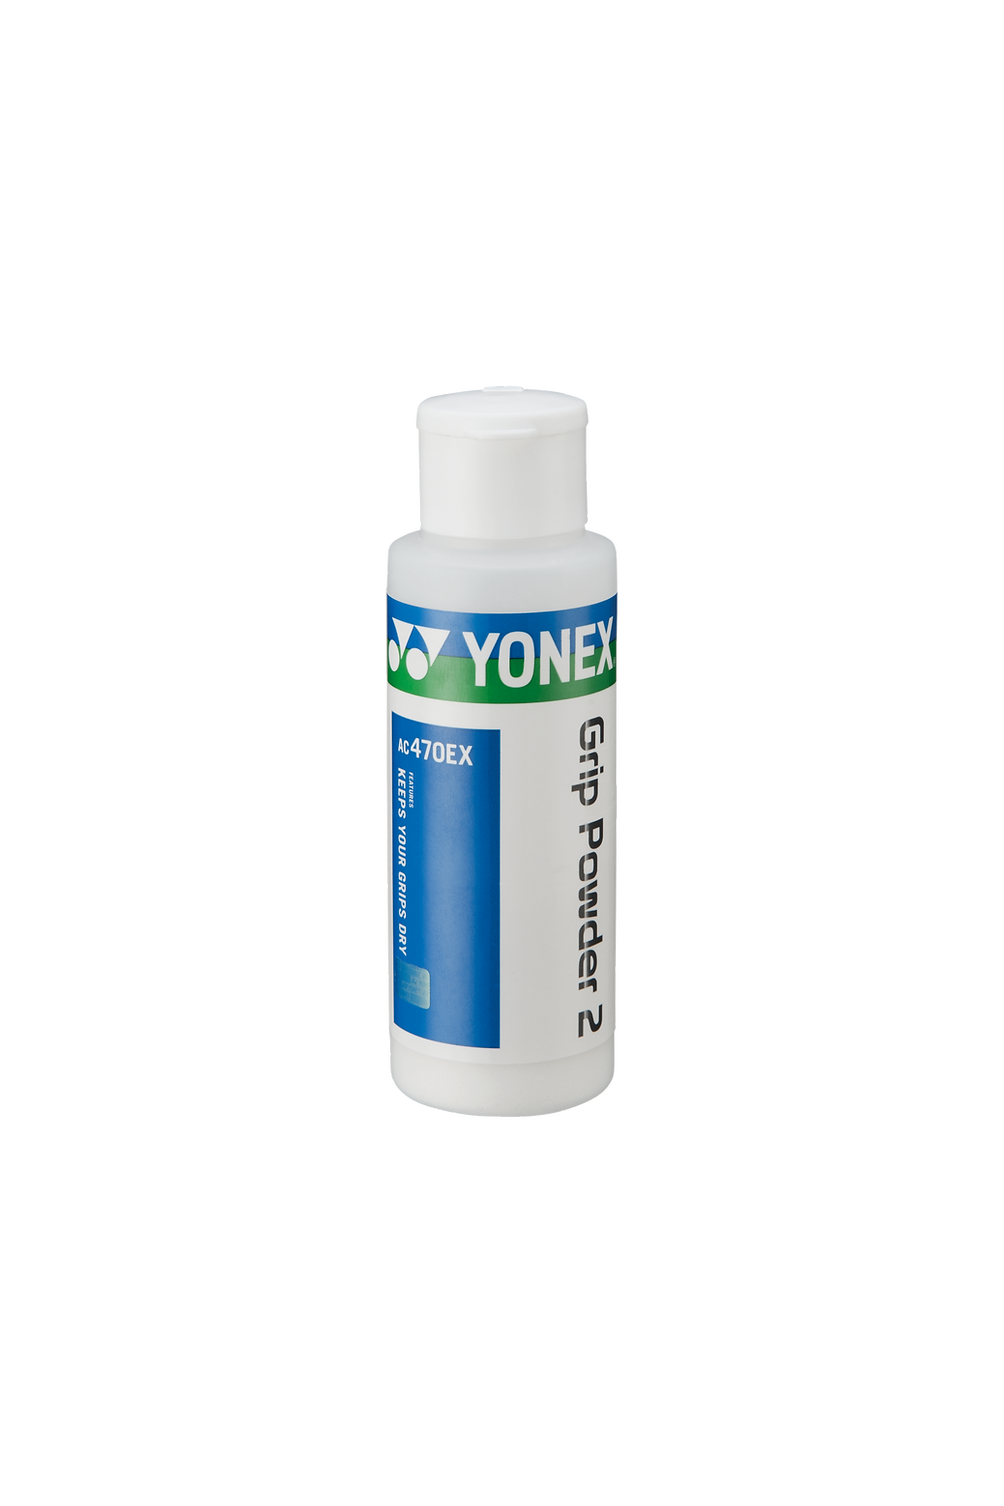 Yonex Grip Powder 2 470EX 20g